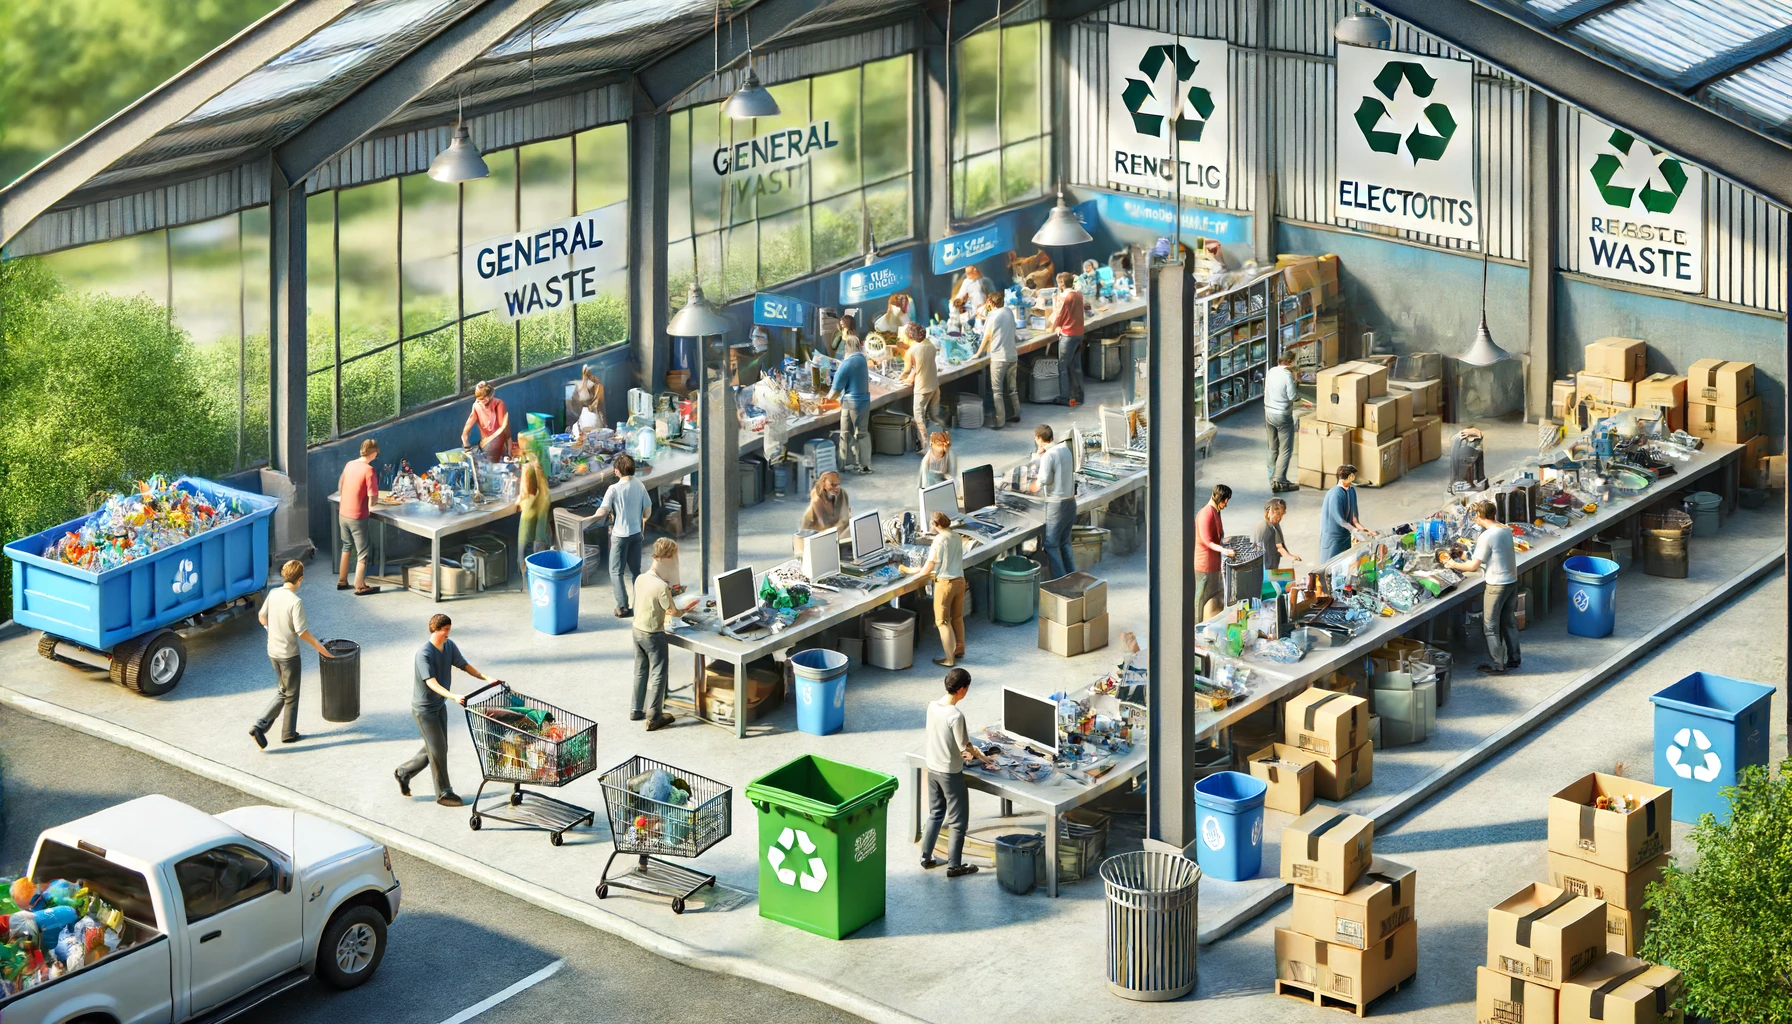 Une image d'un centre de recyclage propre et bien organisé où les gens apportent leurs déchets, incluant différents secteurs pour la collecte des matières premières